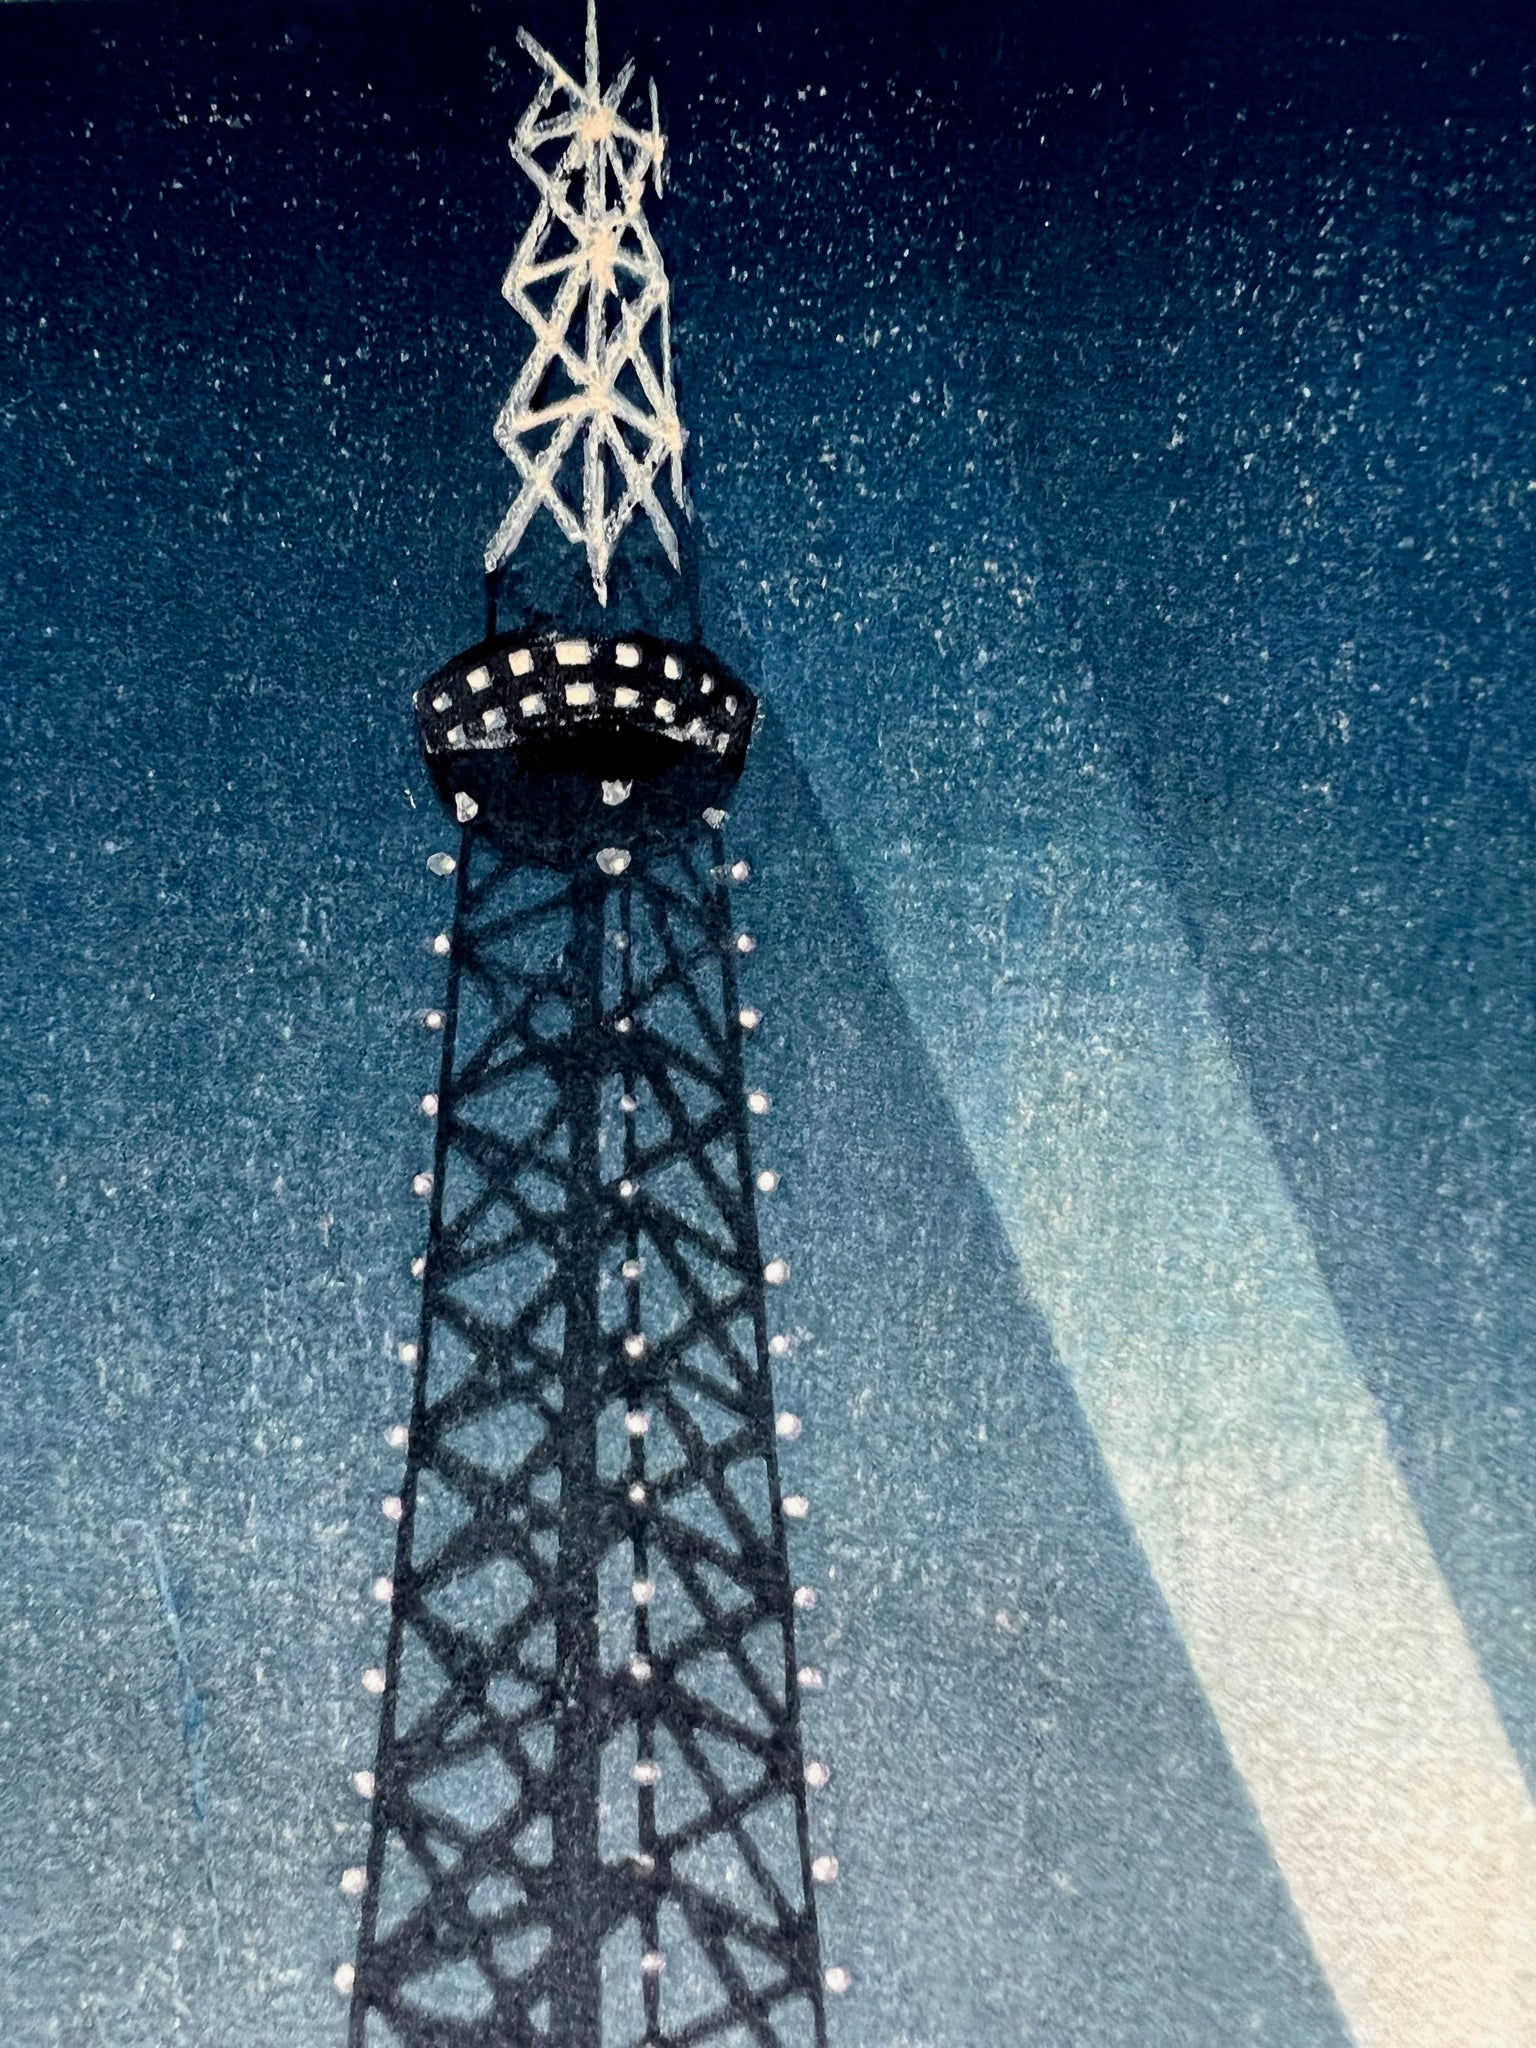 estampe japonaise shin-hanga tour de Tokyo illuminée la nuit, gros plan sur le sommet éclairé de la tour